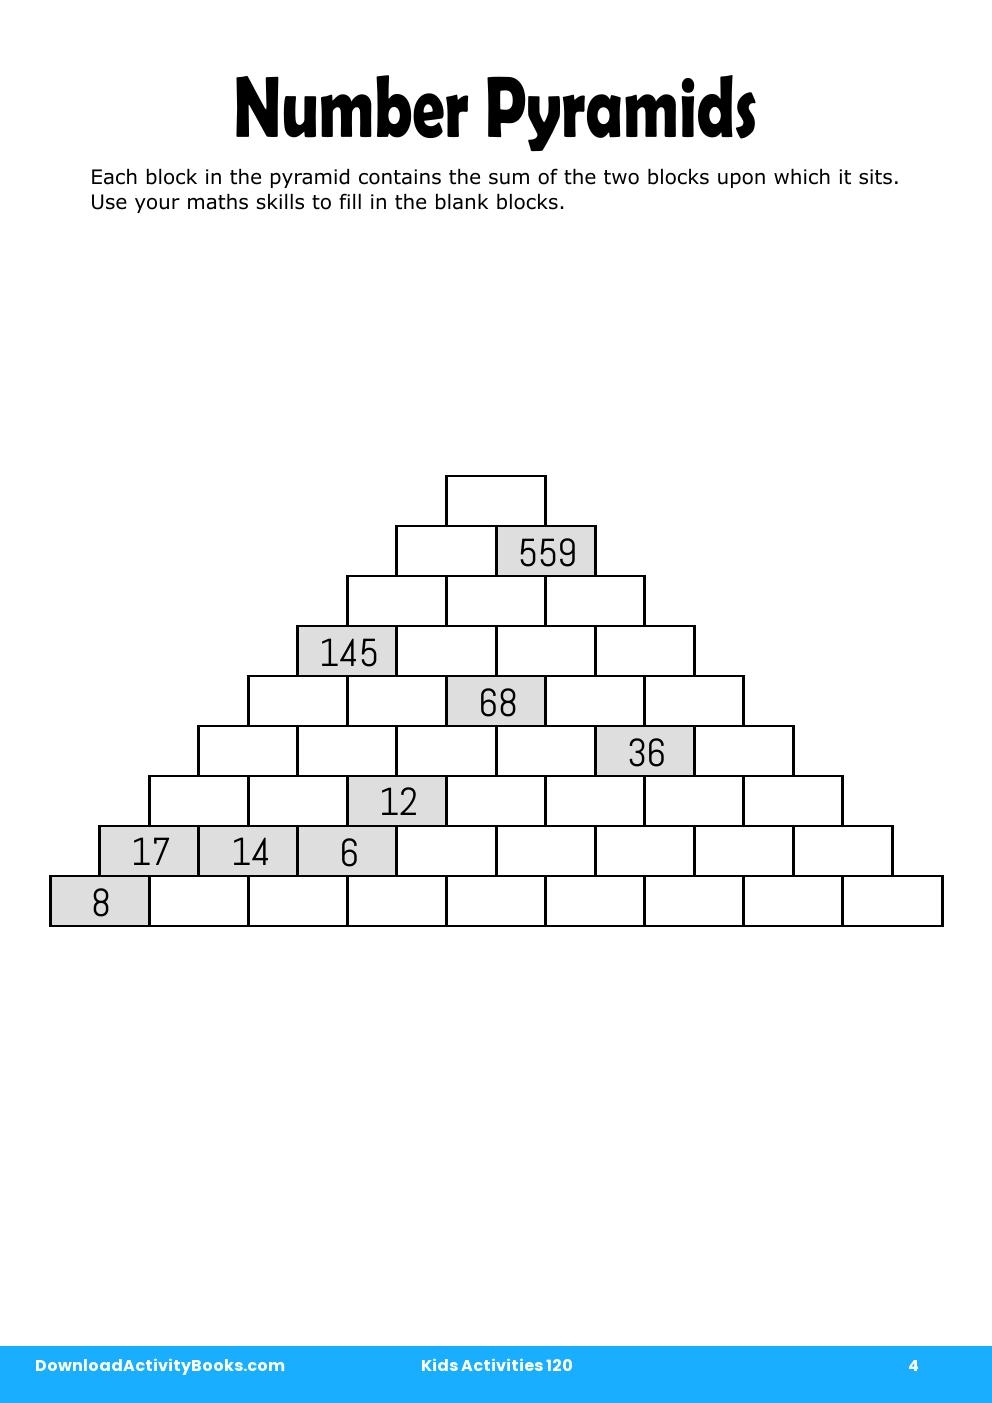 Number Pyramids in Kids Activities 120